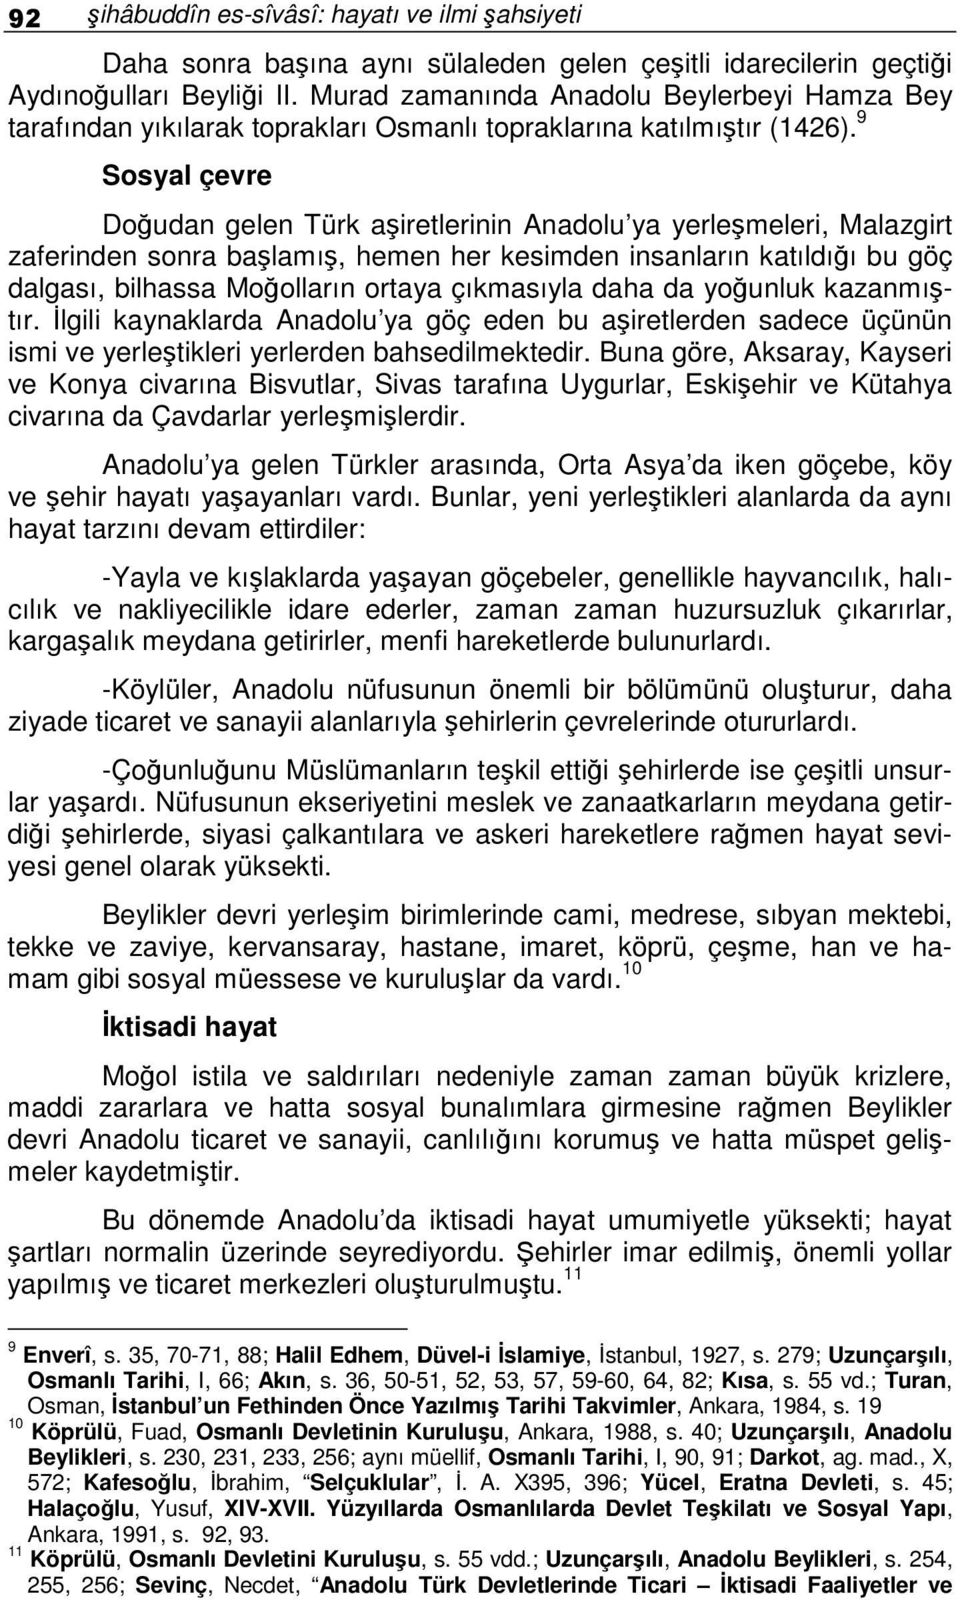 9 Sosyal çevre Doudan gelen Türk airetlerinin Anadolu ya yerlemeleri, Malazgirt zaferinden sonra balamı, hemen her kesimden insanların katıldıı bu göç dalgası, bilhassa Moolların ortaya çıkmasıyla